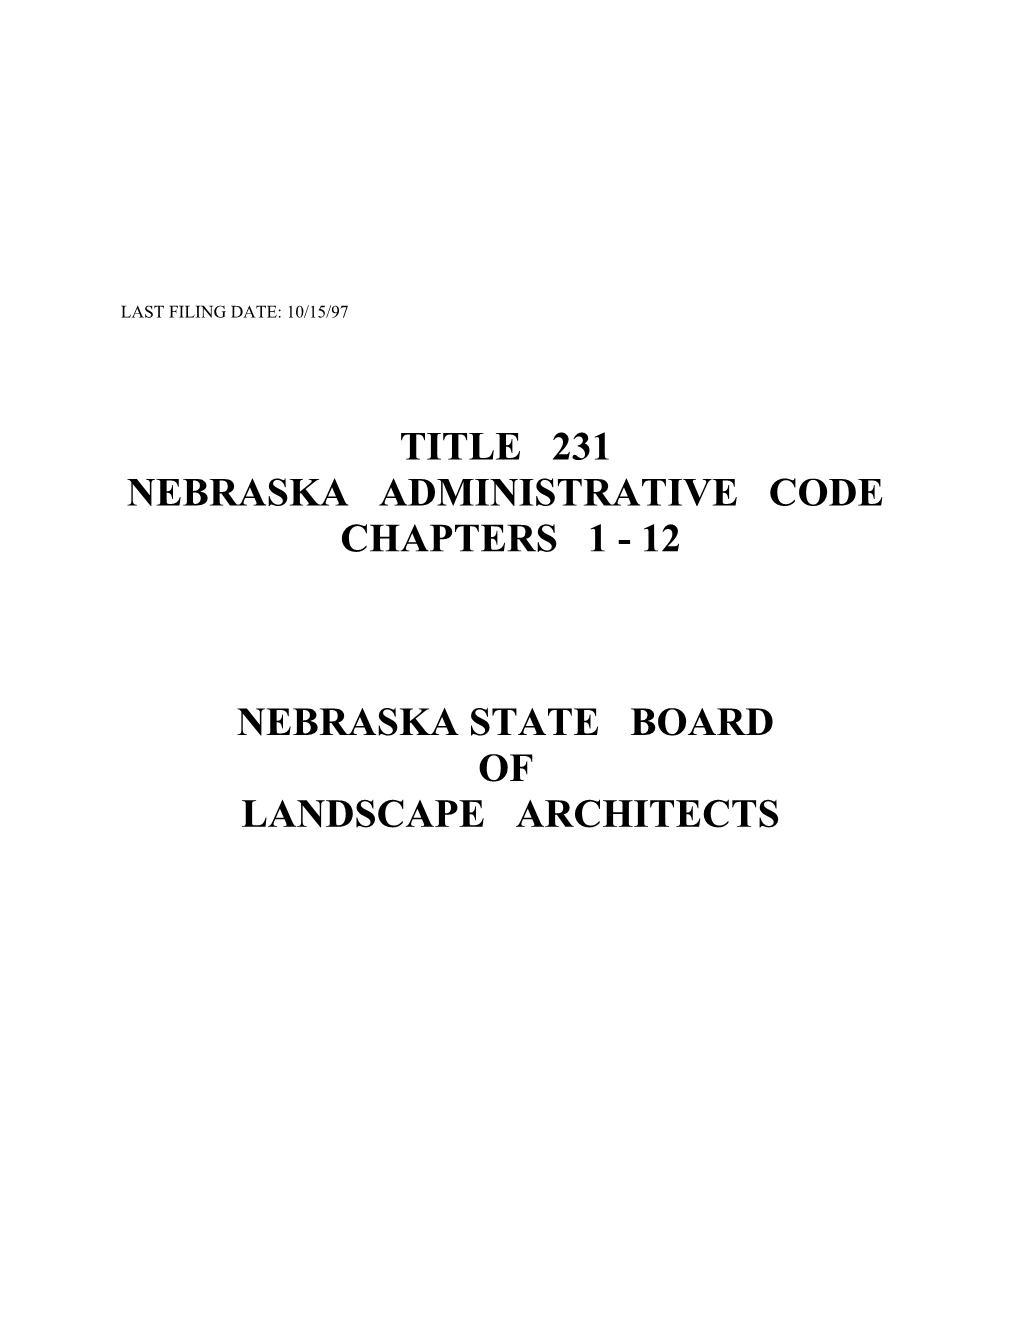 Nebraska State Board of Landscape Architects